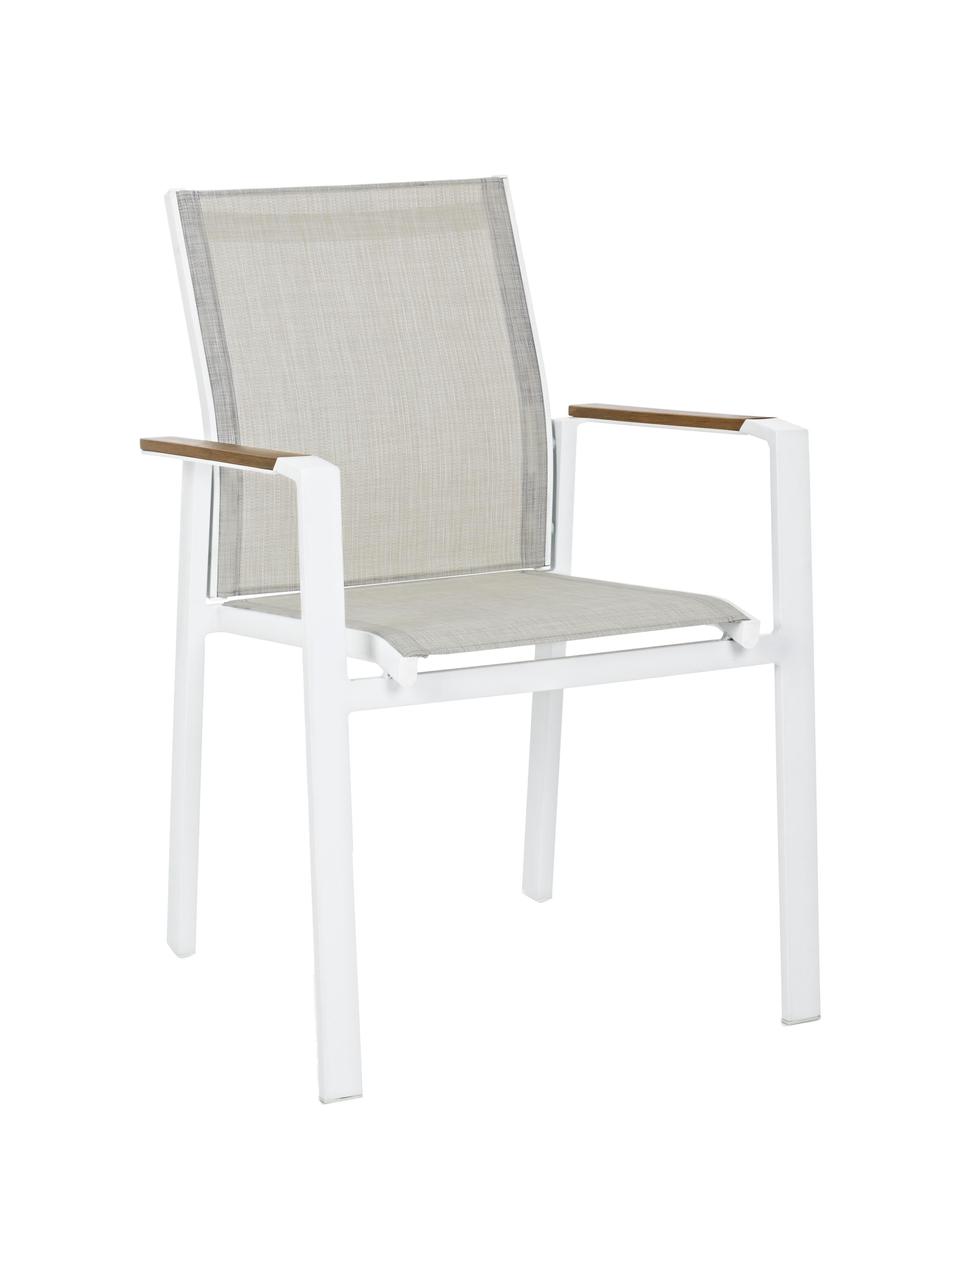 Krzesło ogrodowe z podłokietnikami Kubik, Stelaż: aluminium malowane proszk, Biały, greige, drewno naturalne, S 57 x G 62 cm